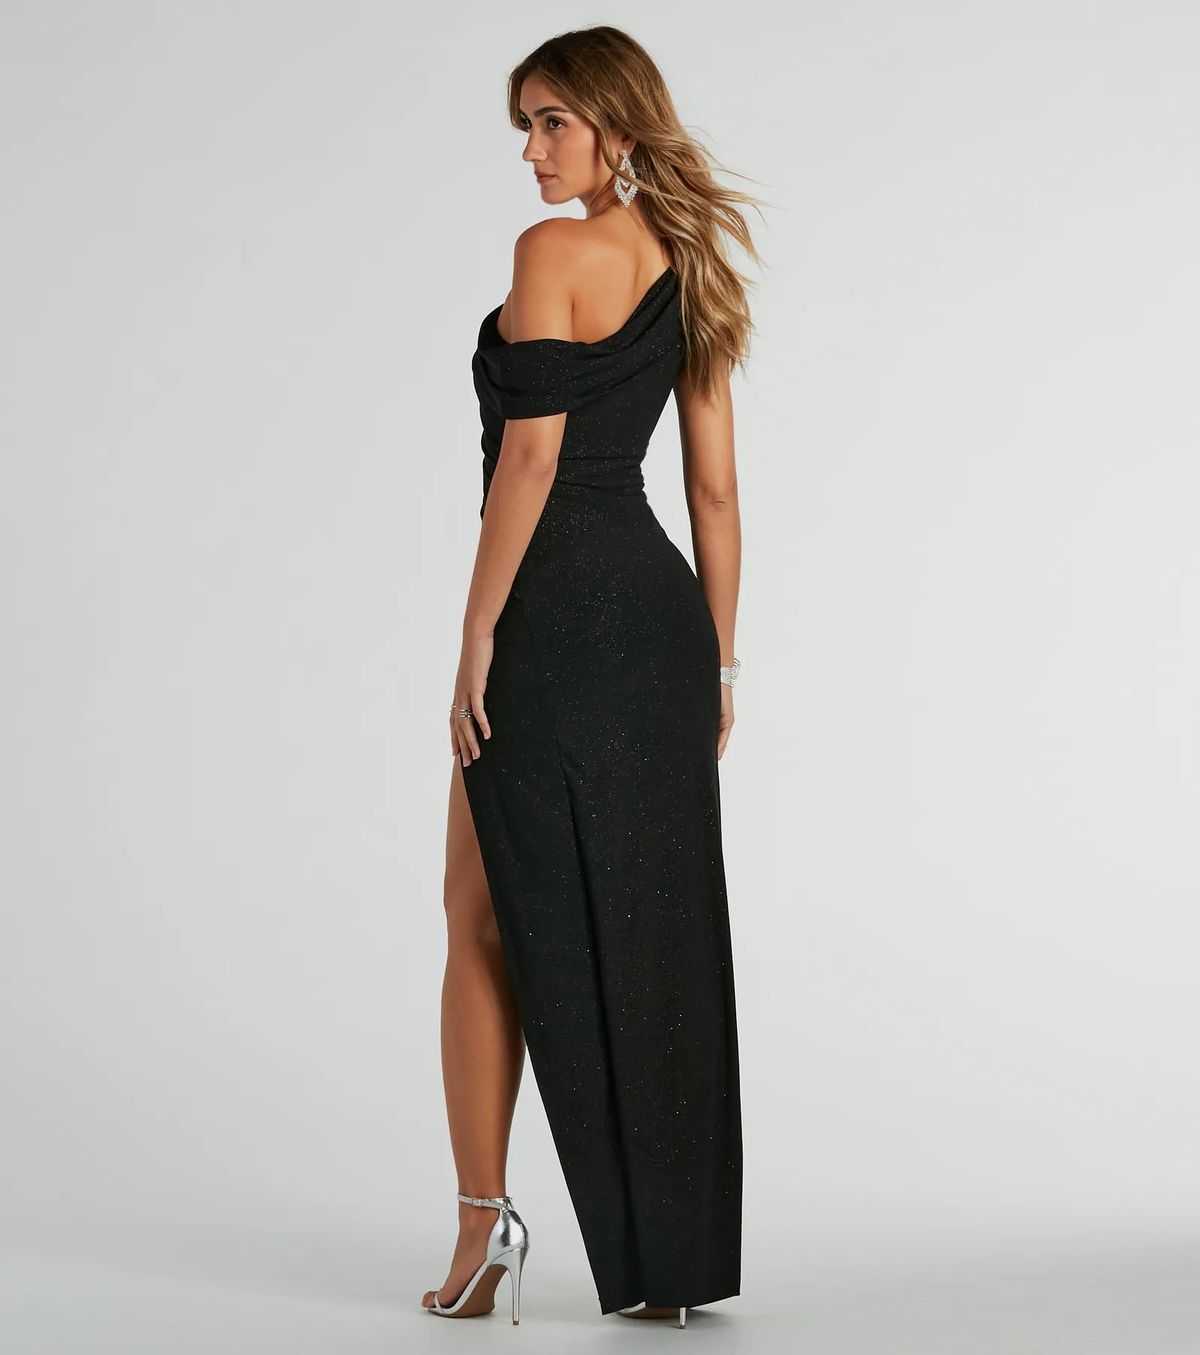 Style 05002-8214 Windsor Size M Bridesmaid One Shoulder Black Side Slit Dress on Queenly